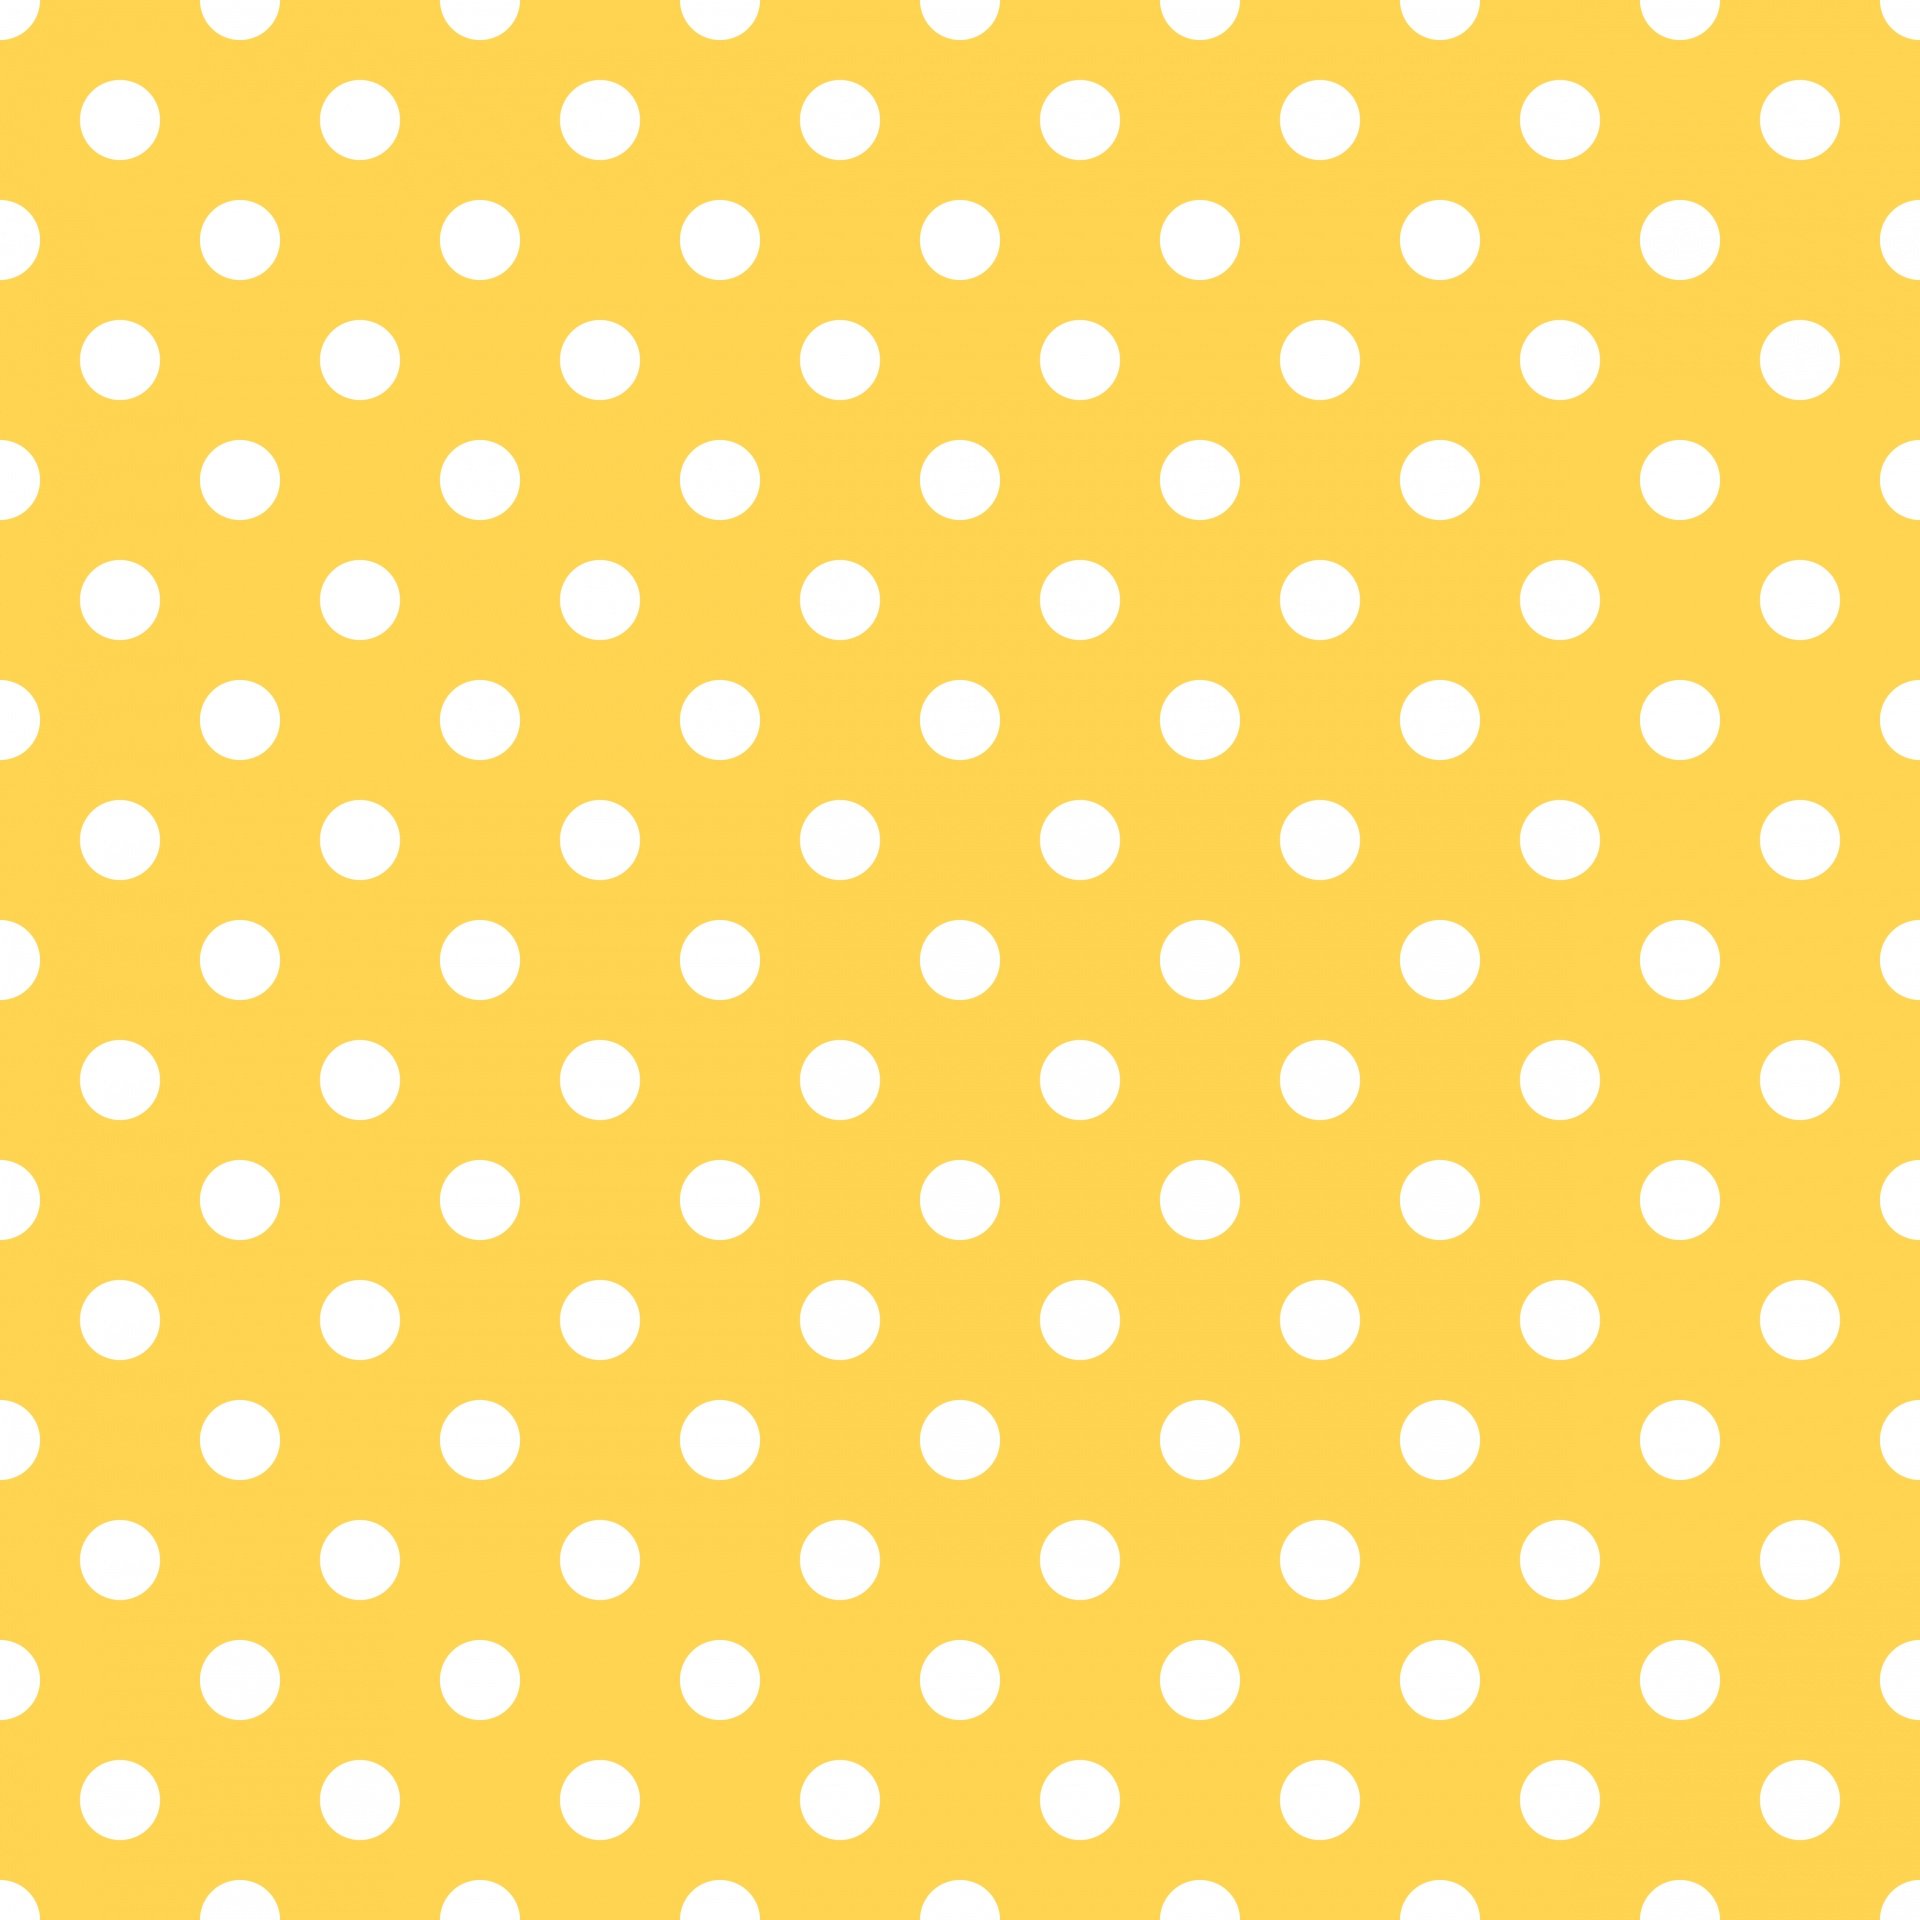 Polka Dots Yellow White